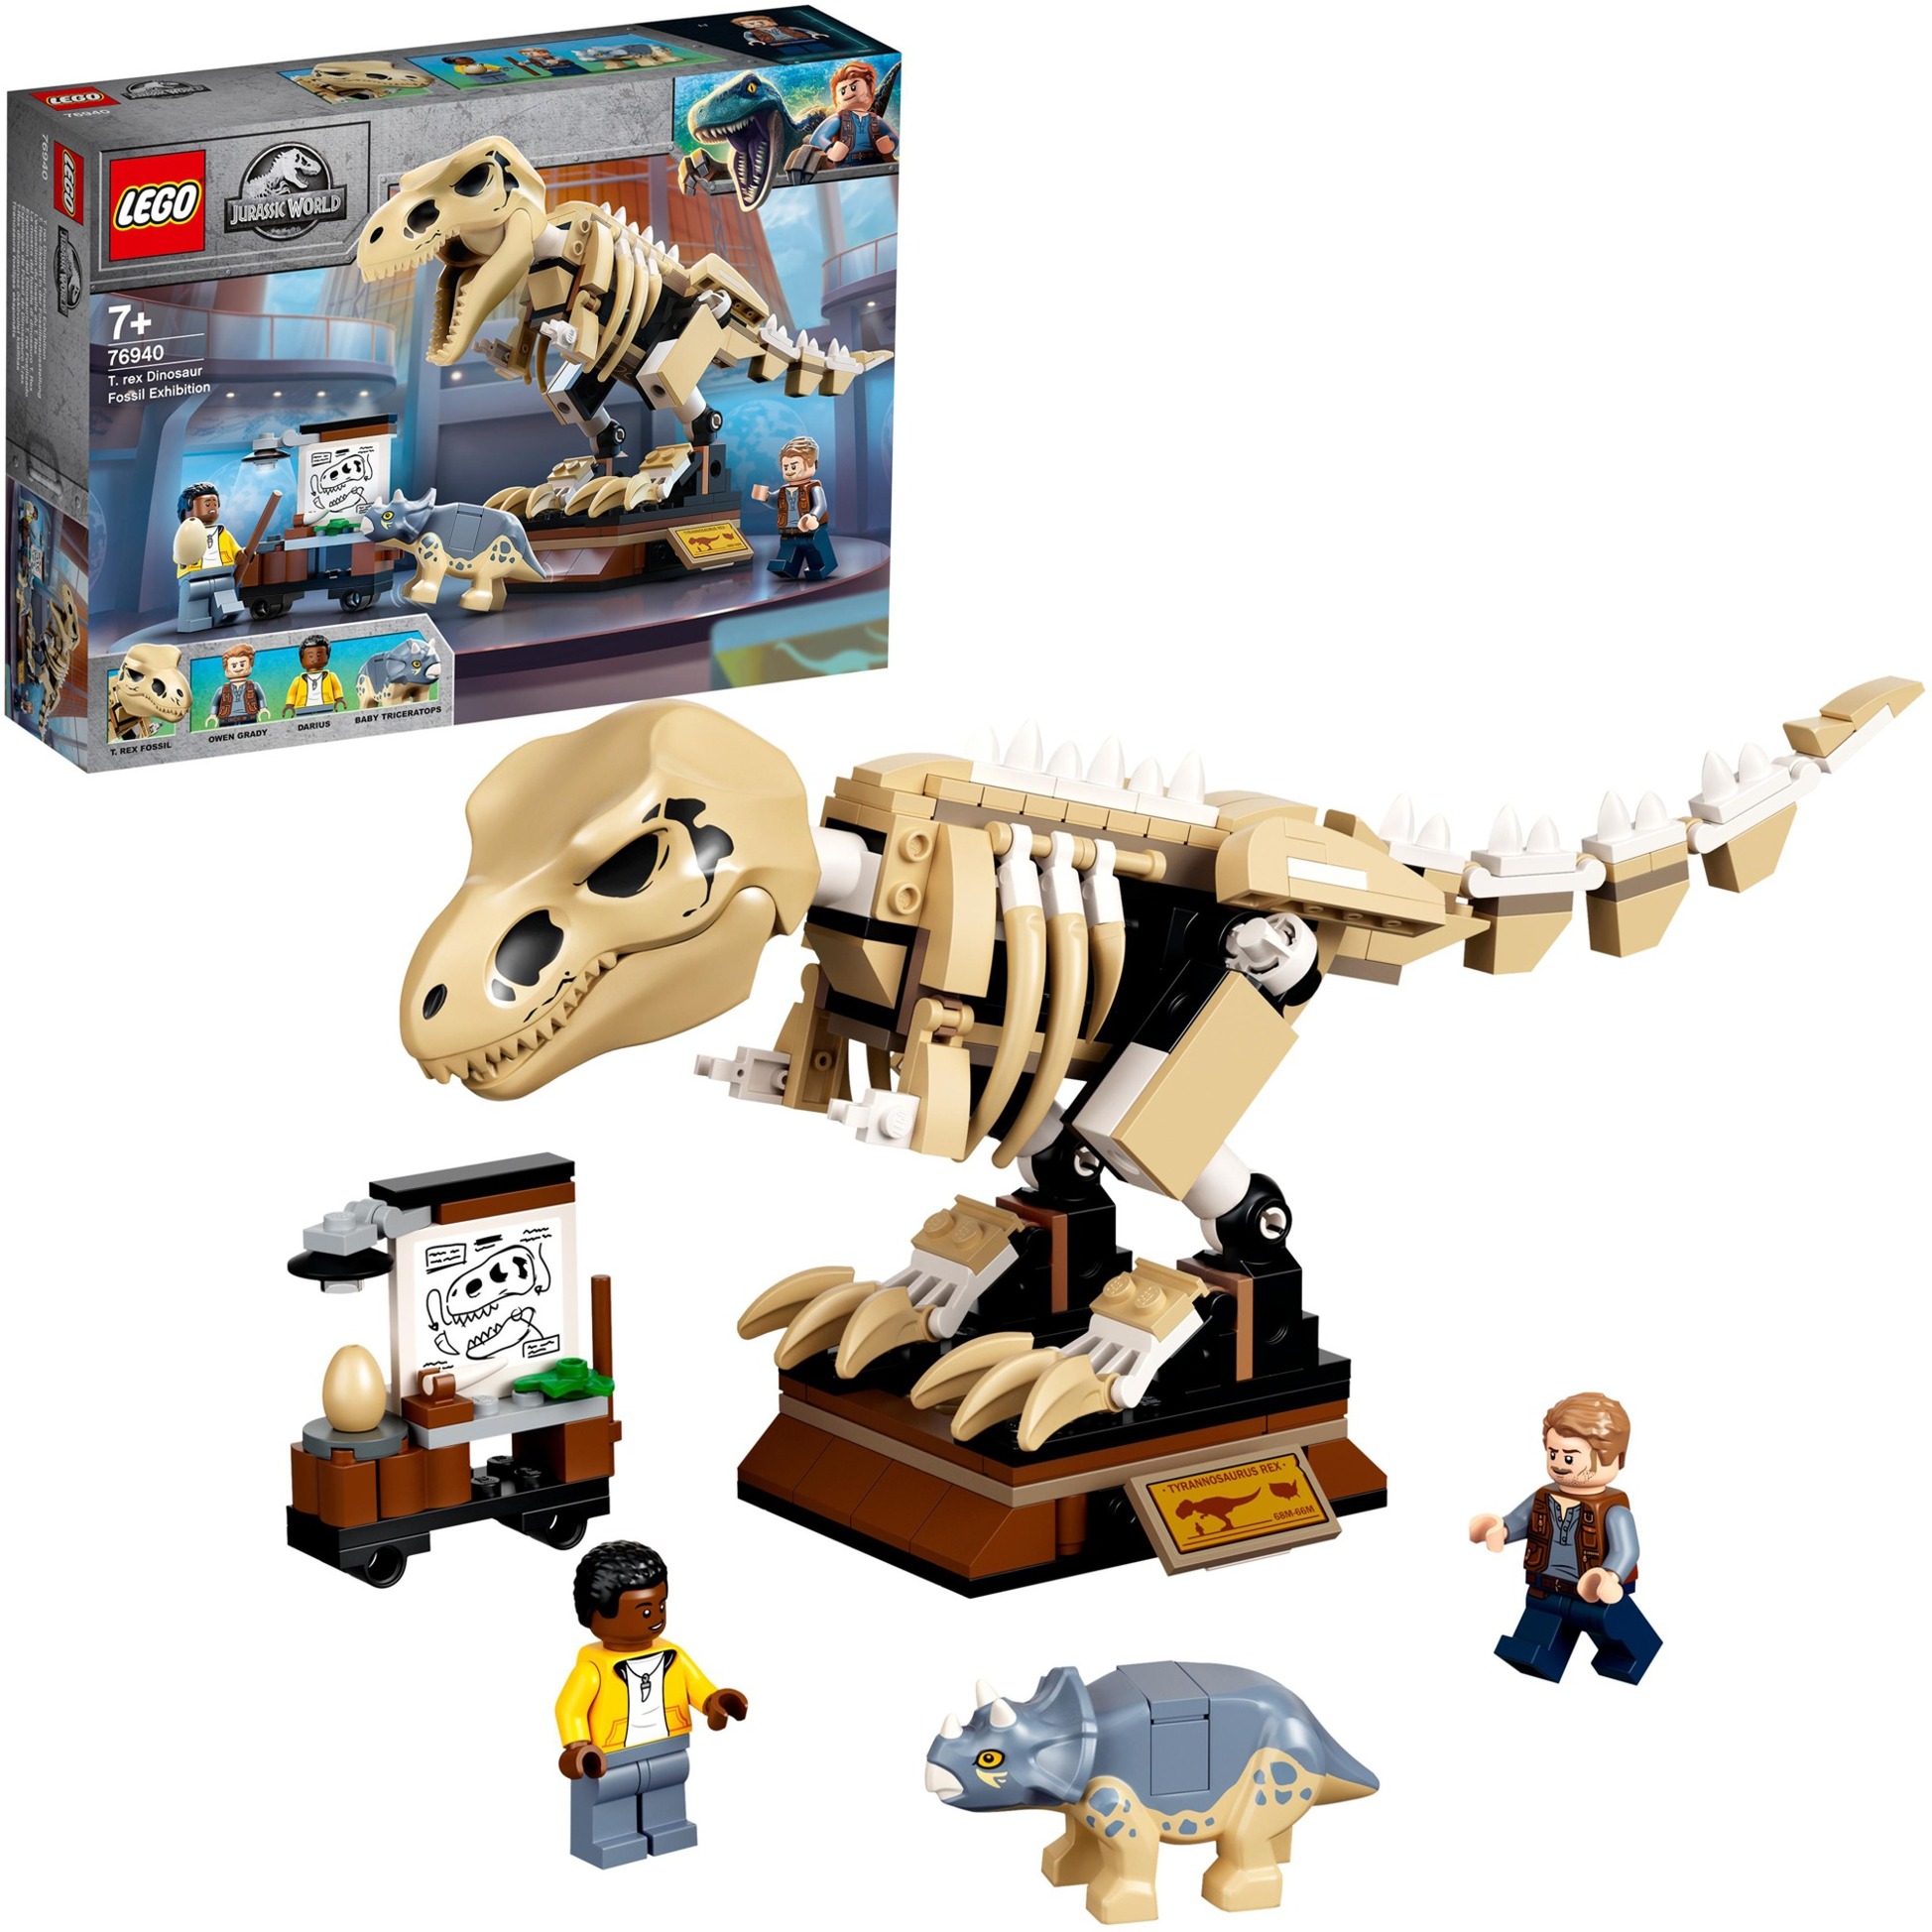 76940 Jurassic World T. Rex-Skelett in der Fossilienausstellung, Konstruktionsspielzeug